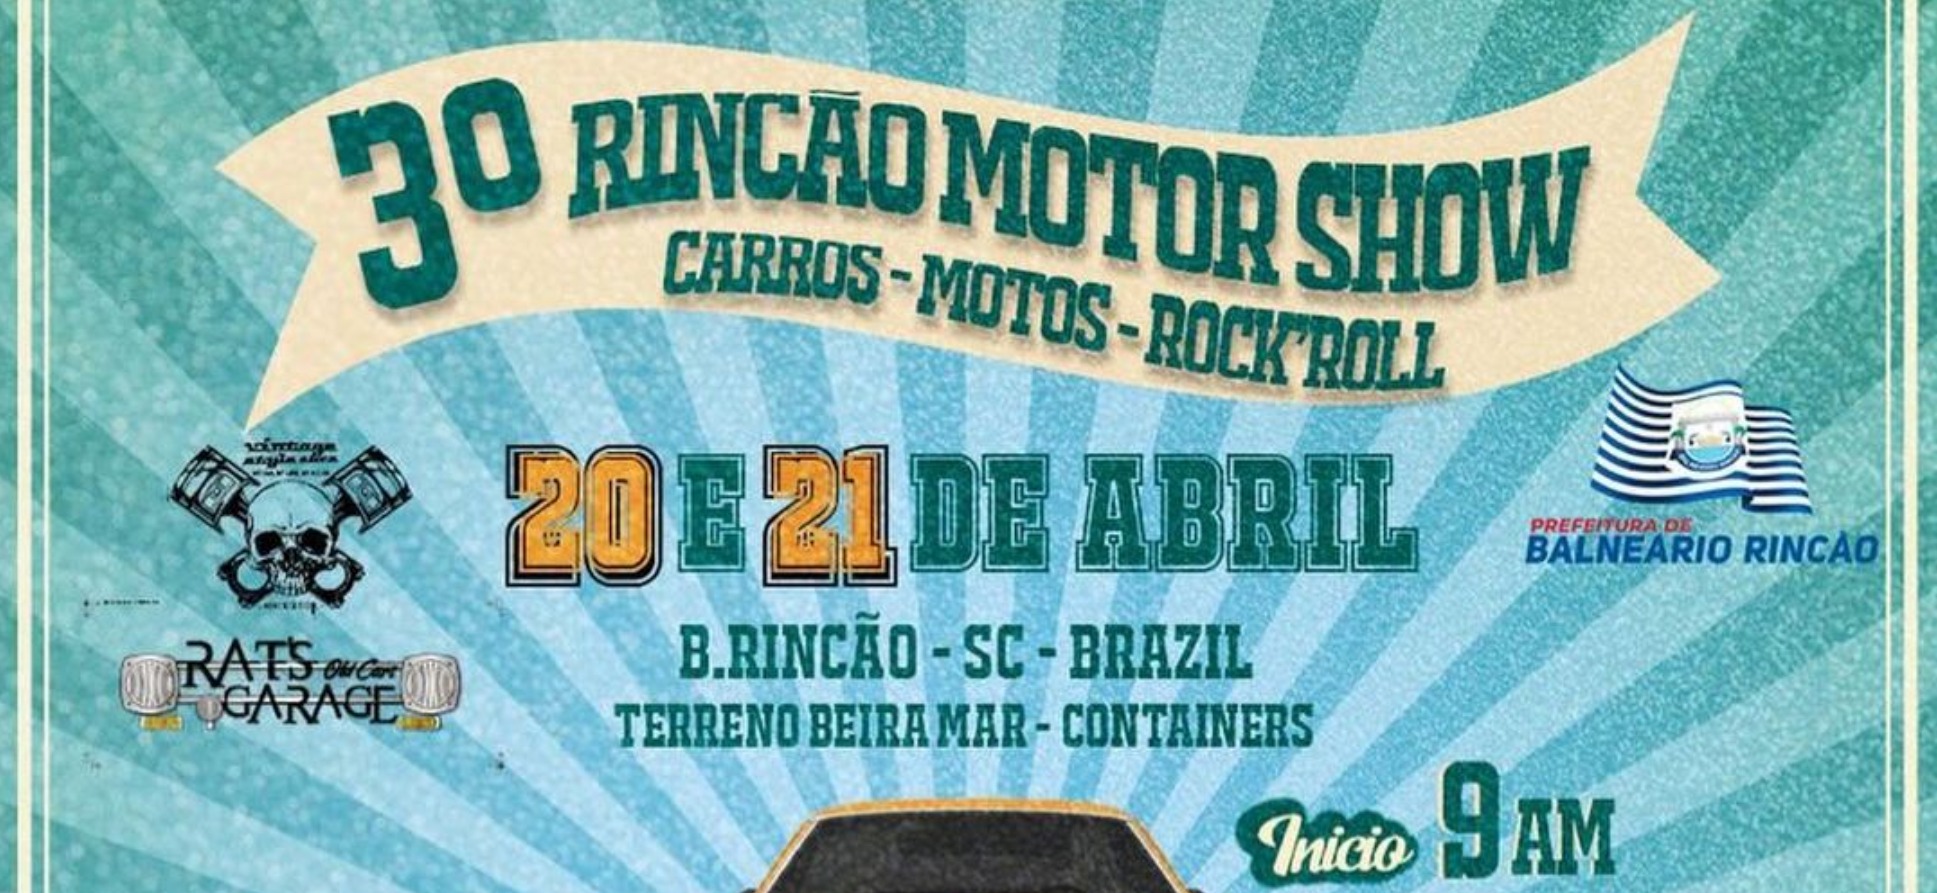 3° Rincão Motor Show acontece dias 20 e 21/04